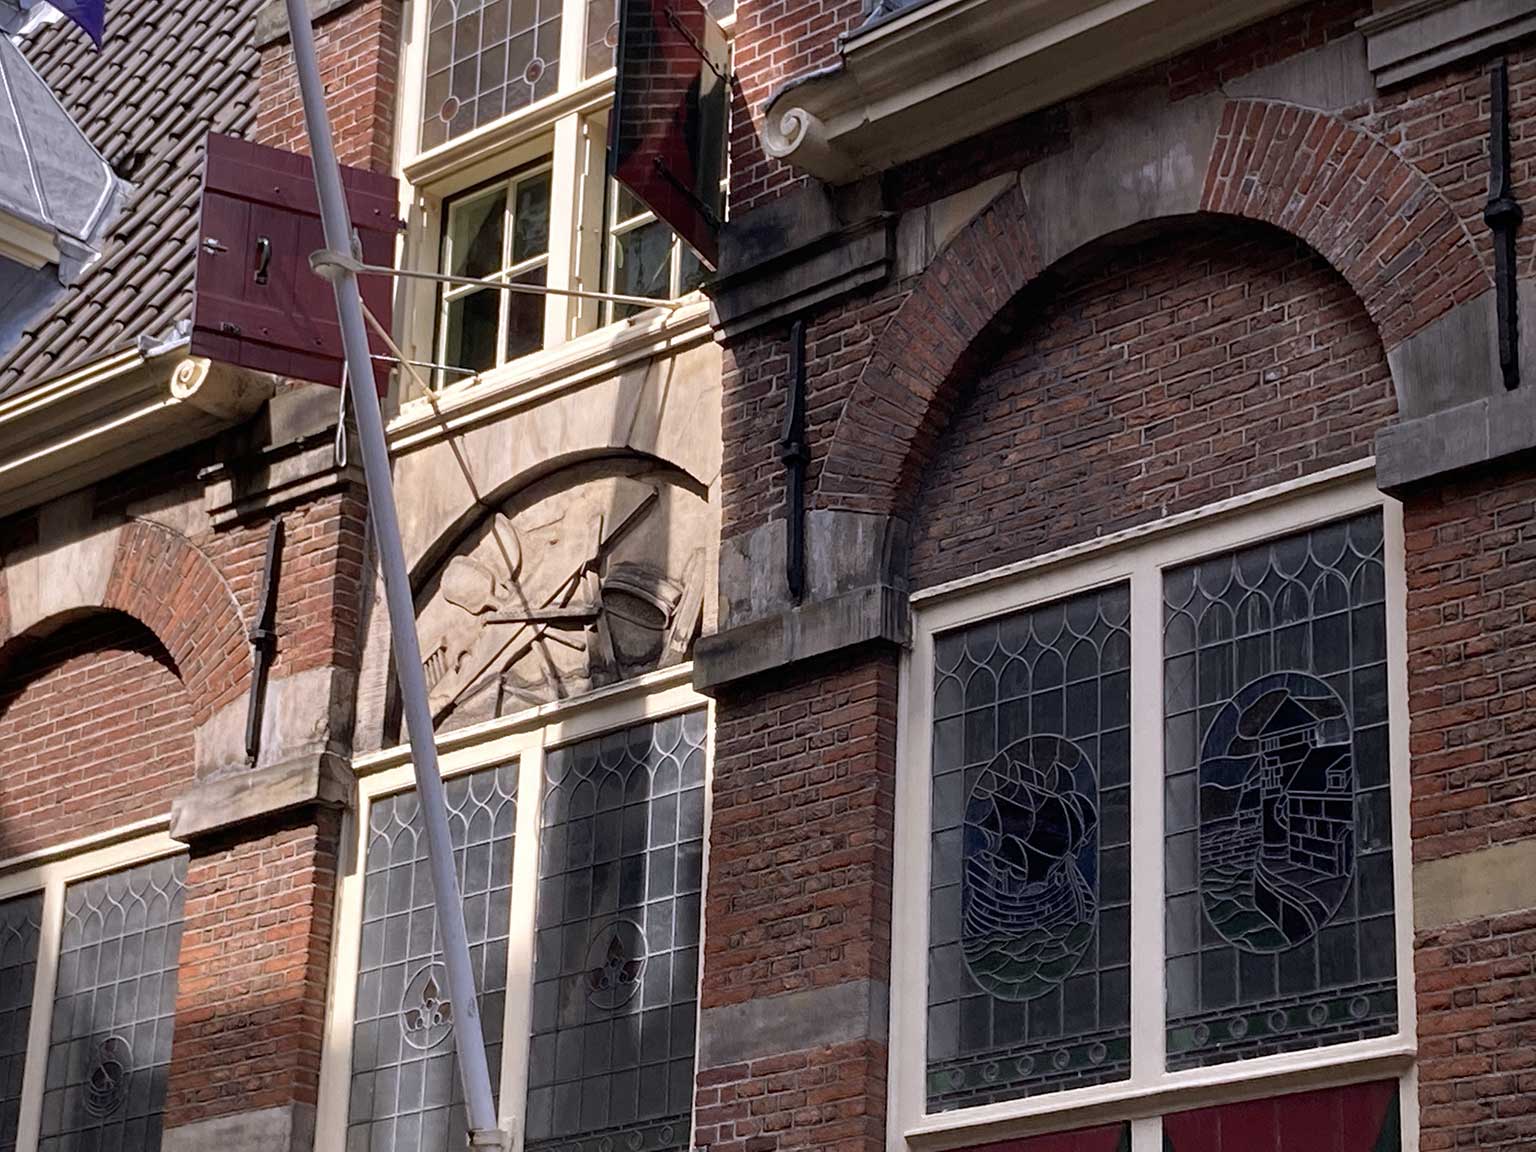 Relief above the front door of the Korenmetershuis, Amsterdam